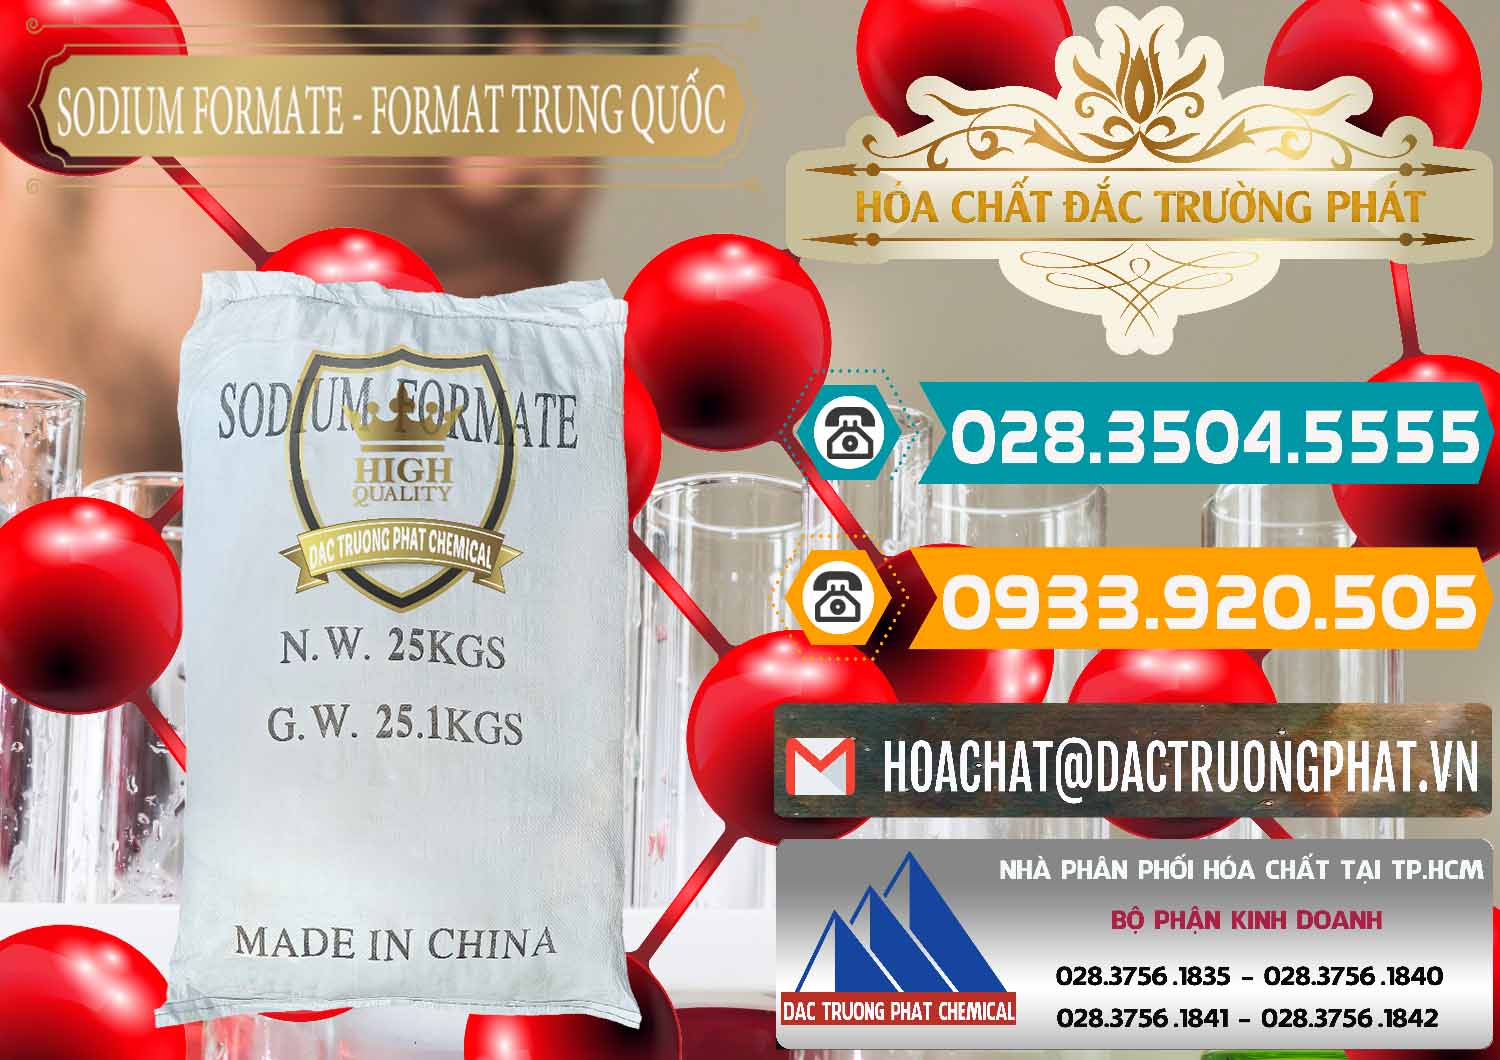 Bán ( cung cấp ) Sodium Formate - Natri Format Trung Quốc China - 0142 - Nơi chuyên cung cấp và kinh doanh hóa chất tại TP.HCM - congtyhoachat.vn